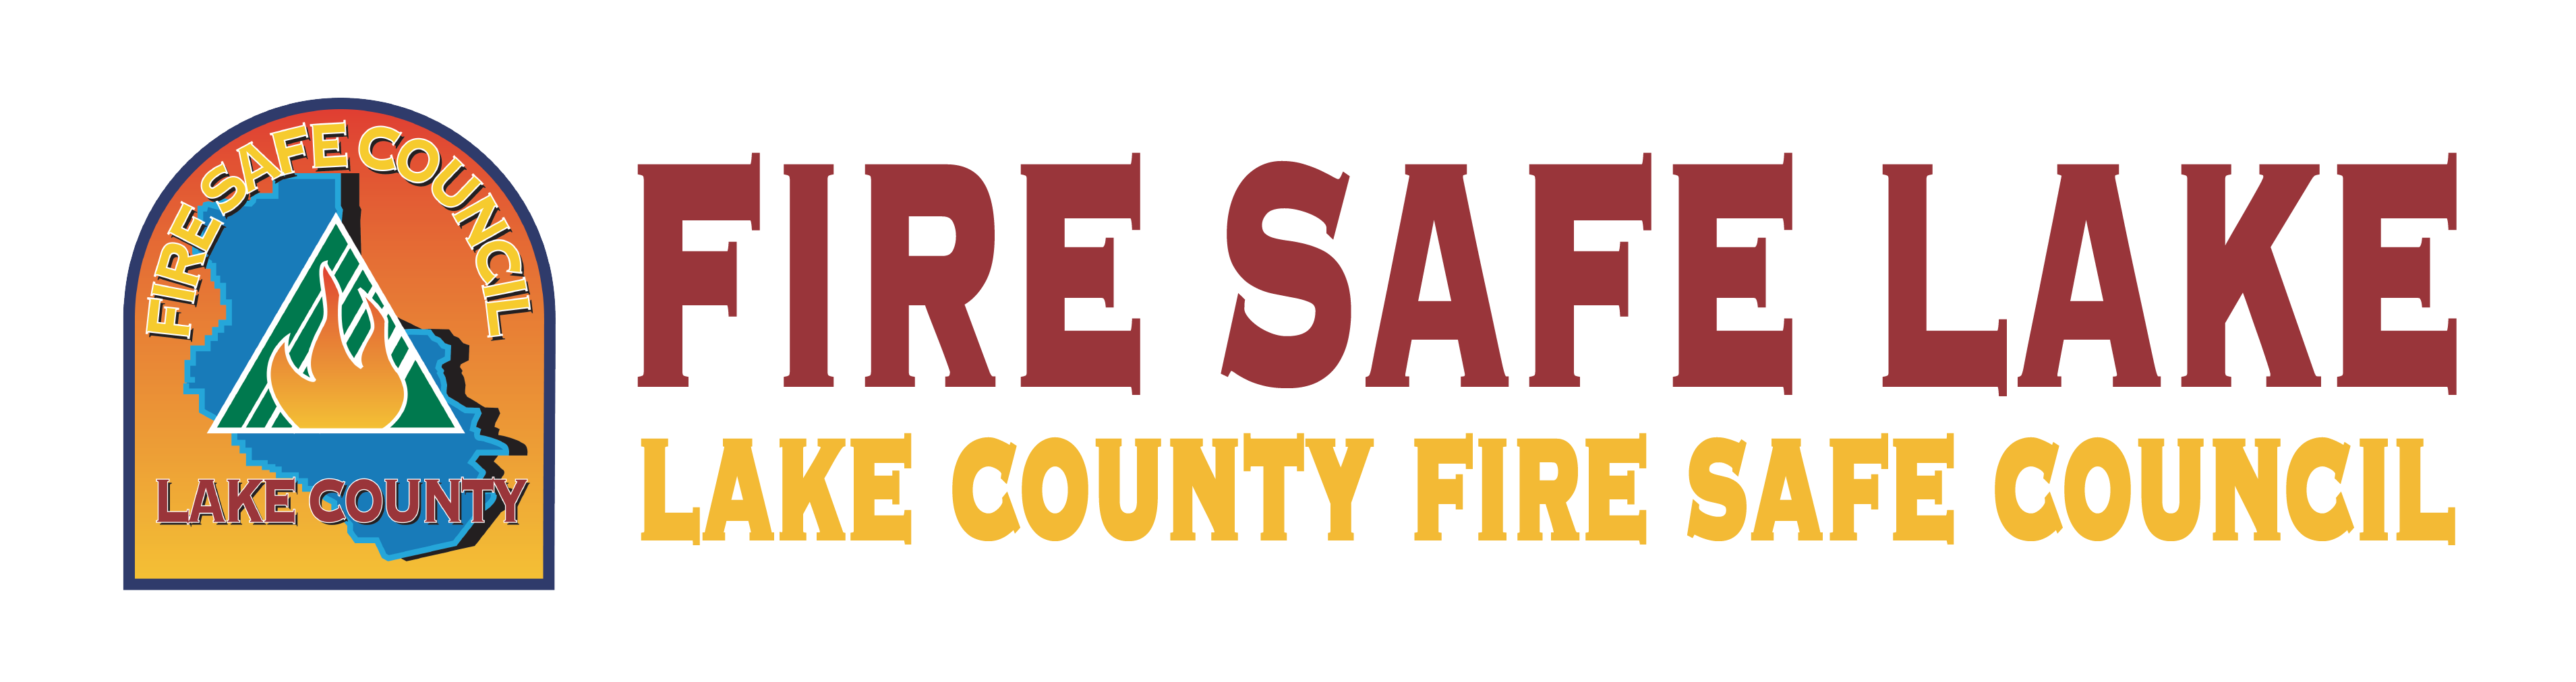 FireSafeLake_Logo-01-4